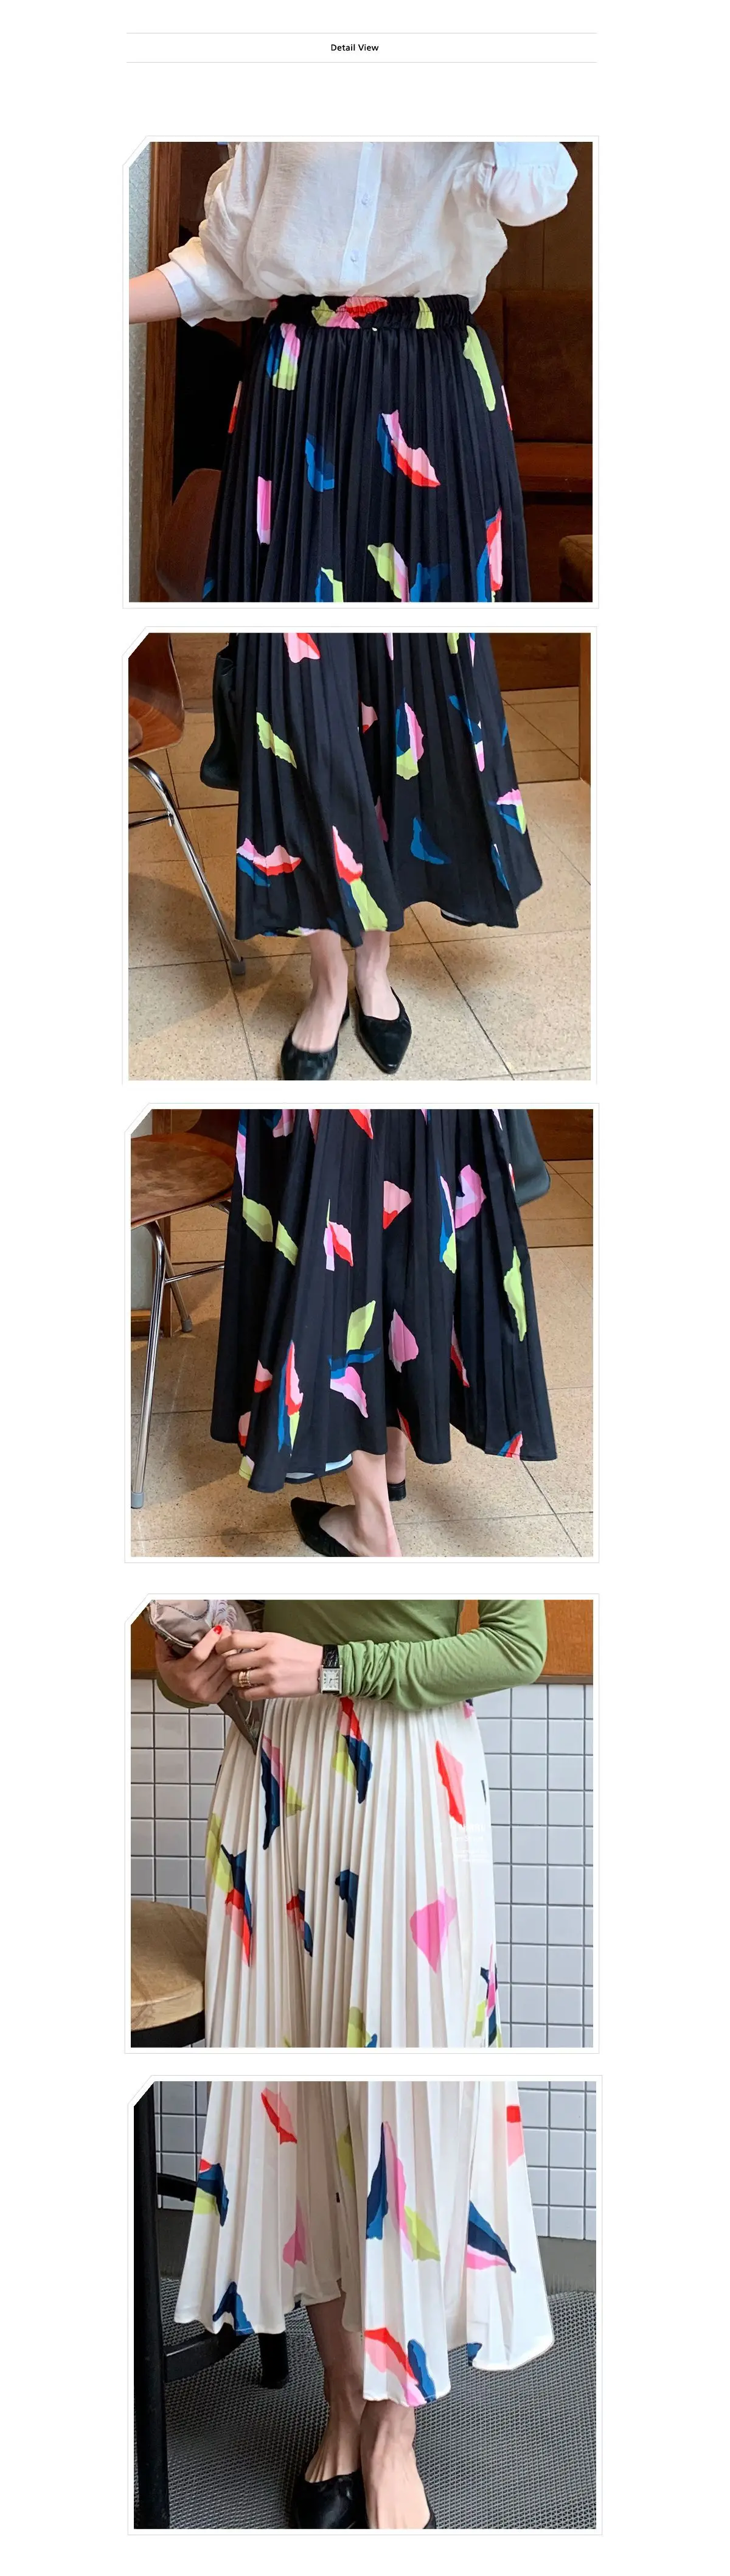 Женские плиссированные юбки с принтом средней длины юбка 2019 Новое поступление Весна летние резинка на талии офис элегантные длинные юбки